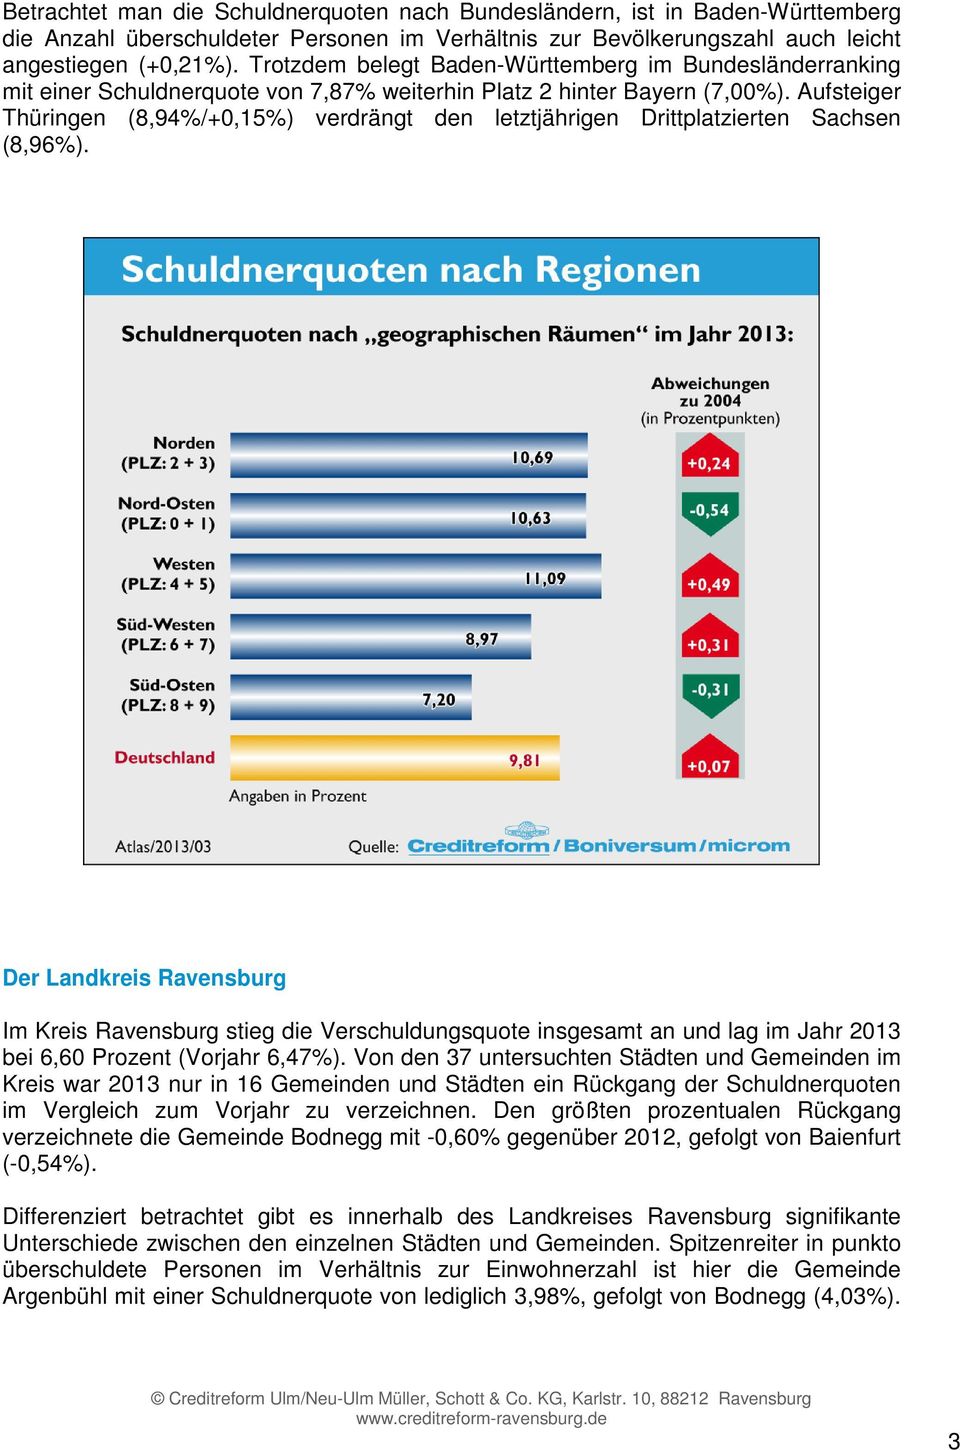 Aufsteiger Thüringen (8,94%/+0,15%) verdrängt den letztjährigen Drittplatzierten Sachsen (8,96%).